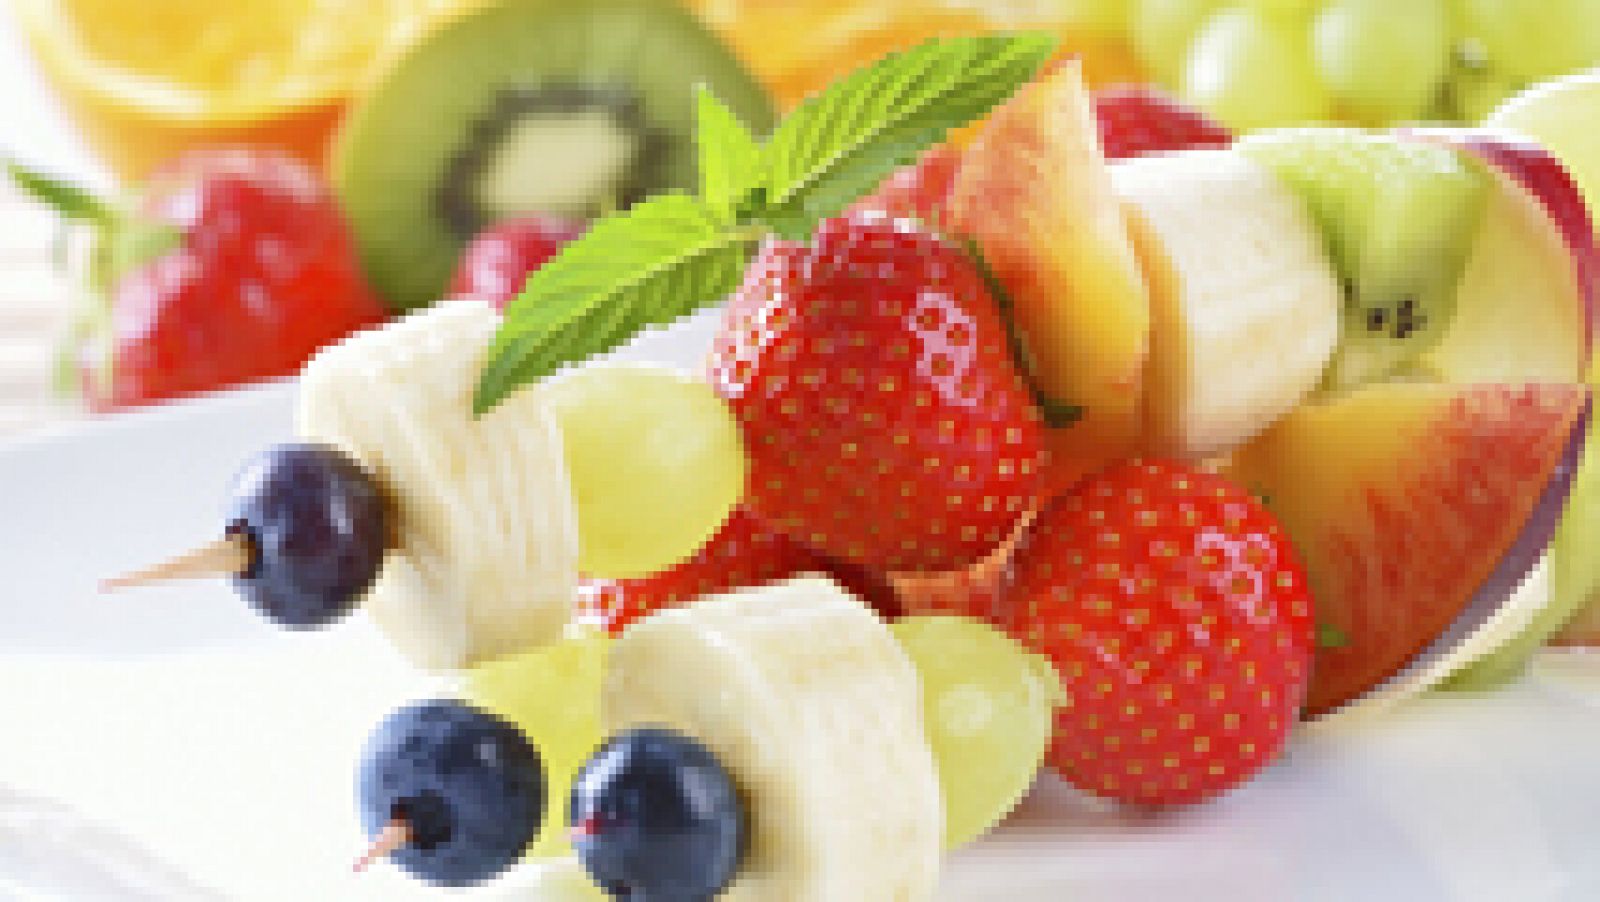 Mitos de la alimentación: La fruta engorda si la comes como postre